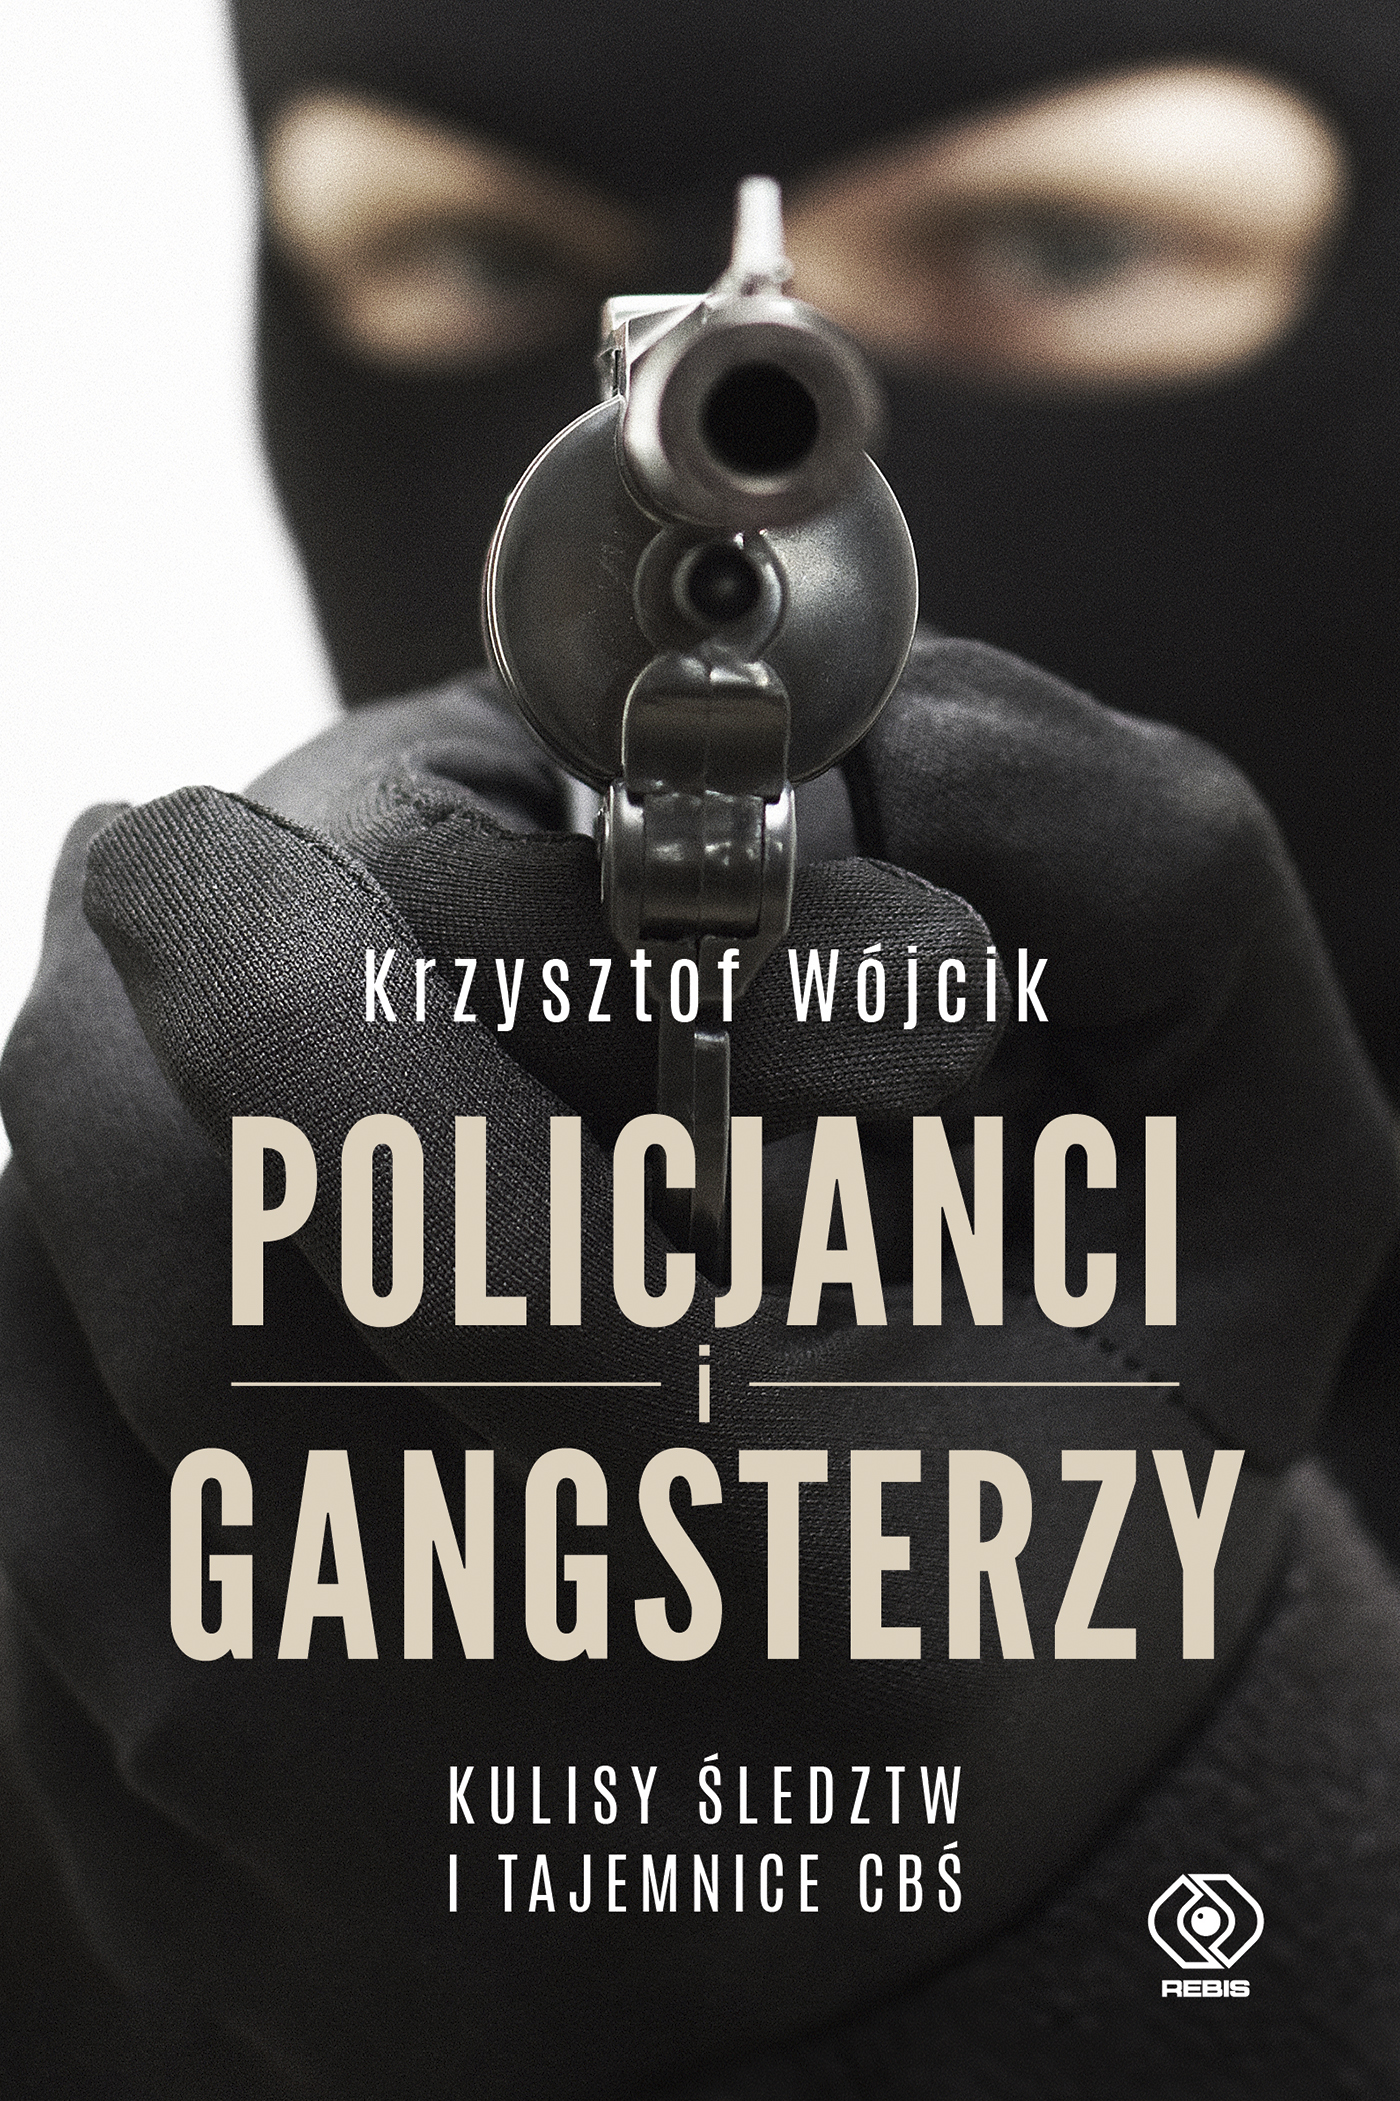  "Policjanci i gangsterzy. Kulisy śledztw i tajemnice CBŚ, Krzysztof Wójcik,